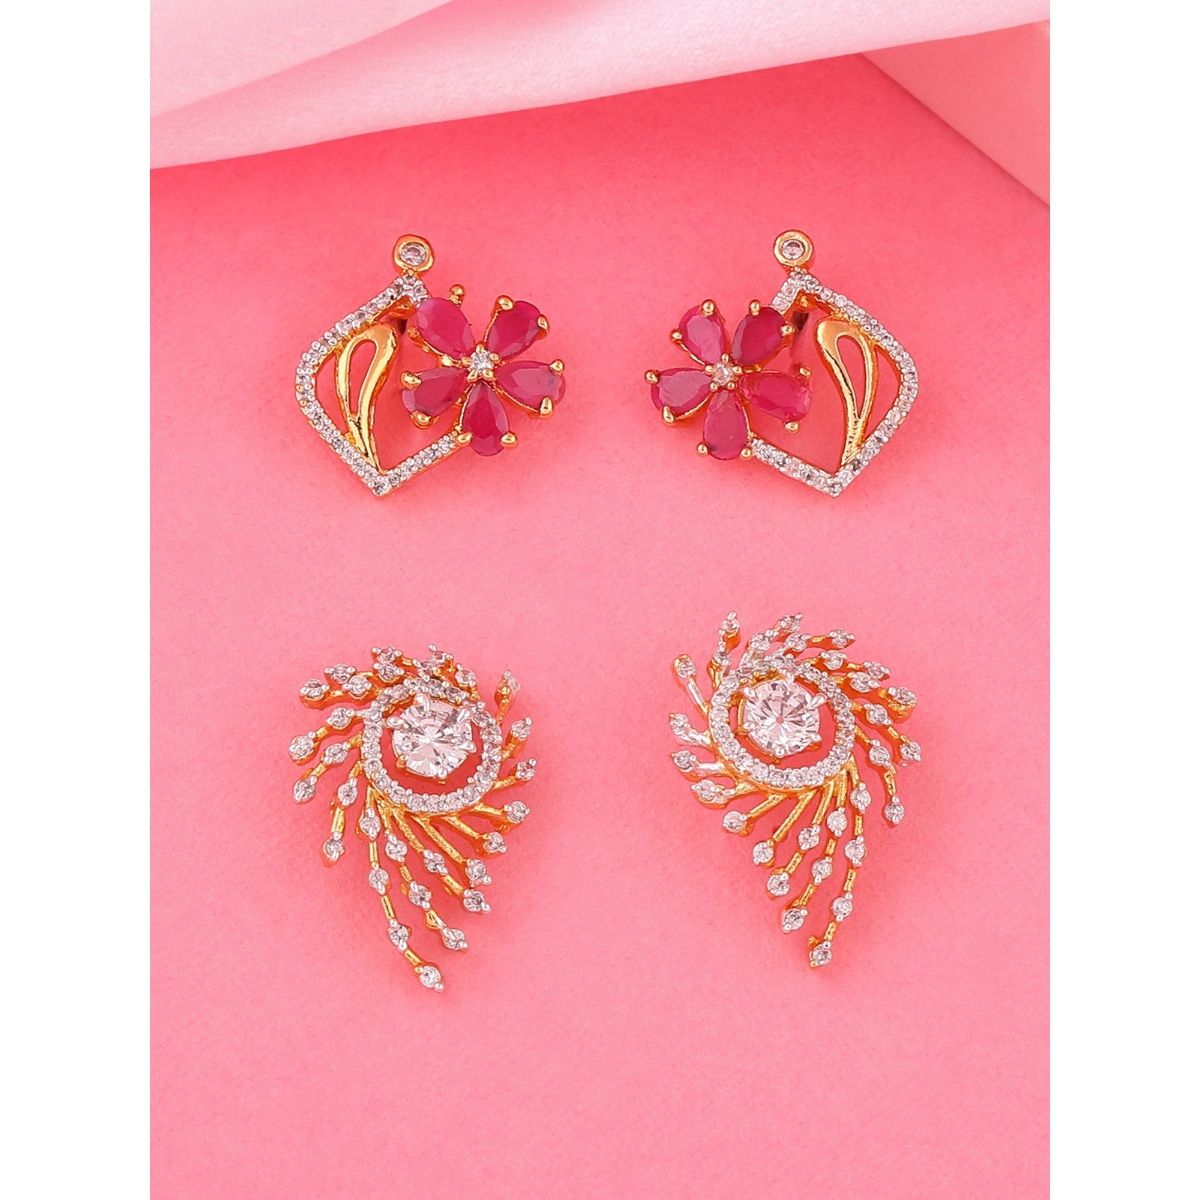 Pink American Diamond Earrings  Stud Earrings for Women  Dream American  Diamond Earrings by Blingvine